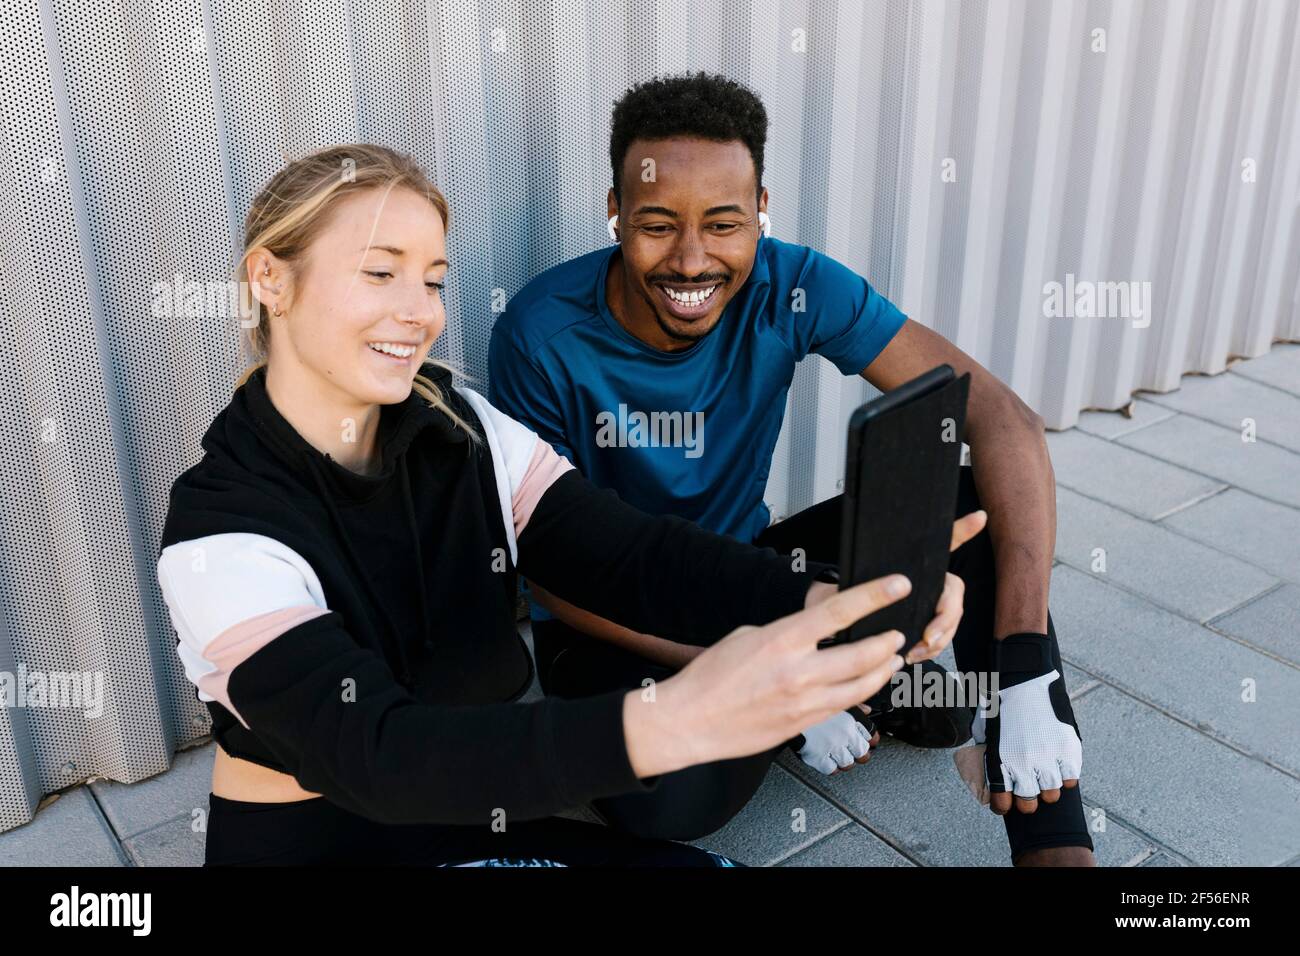 Fröhliche männliche und weibliche Sportlerin, die Selfie über ein digitales Tablet nimmt Auf dem Boden gegen die Wand sitzen Stockfoto